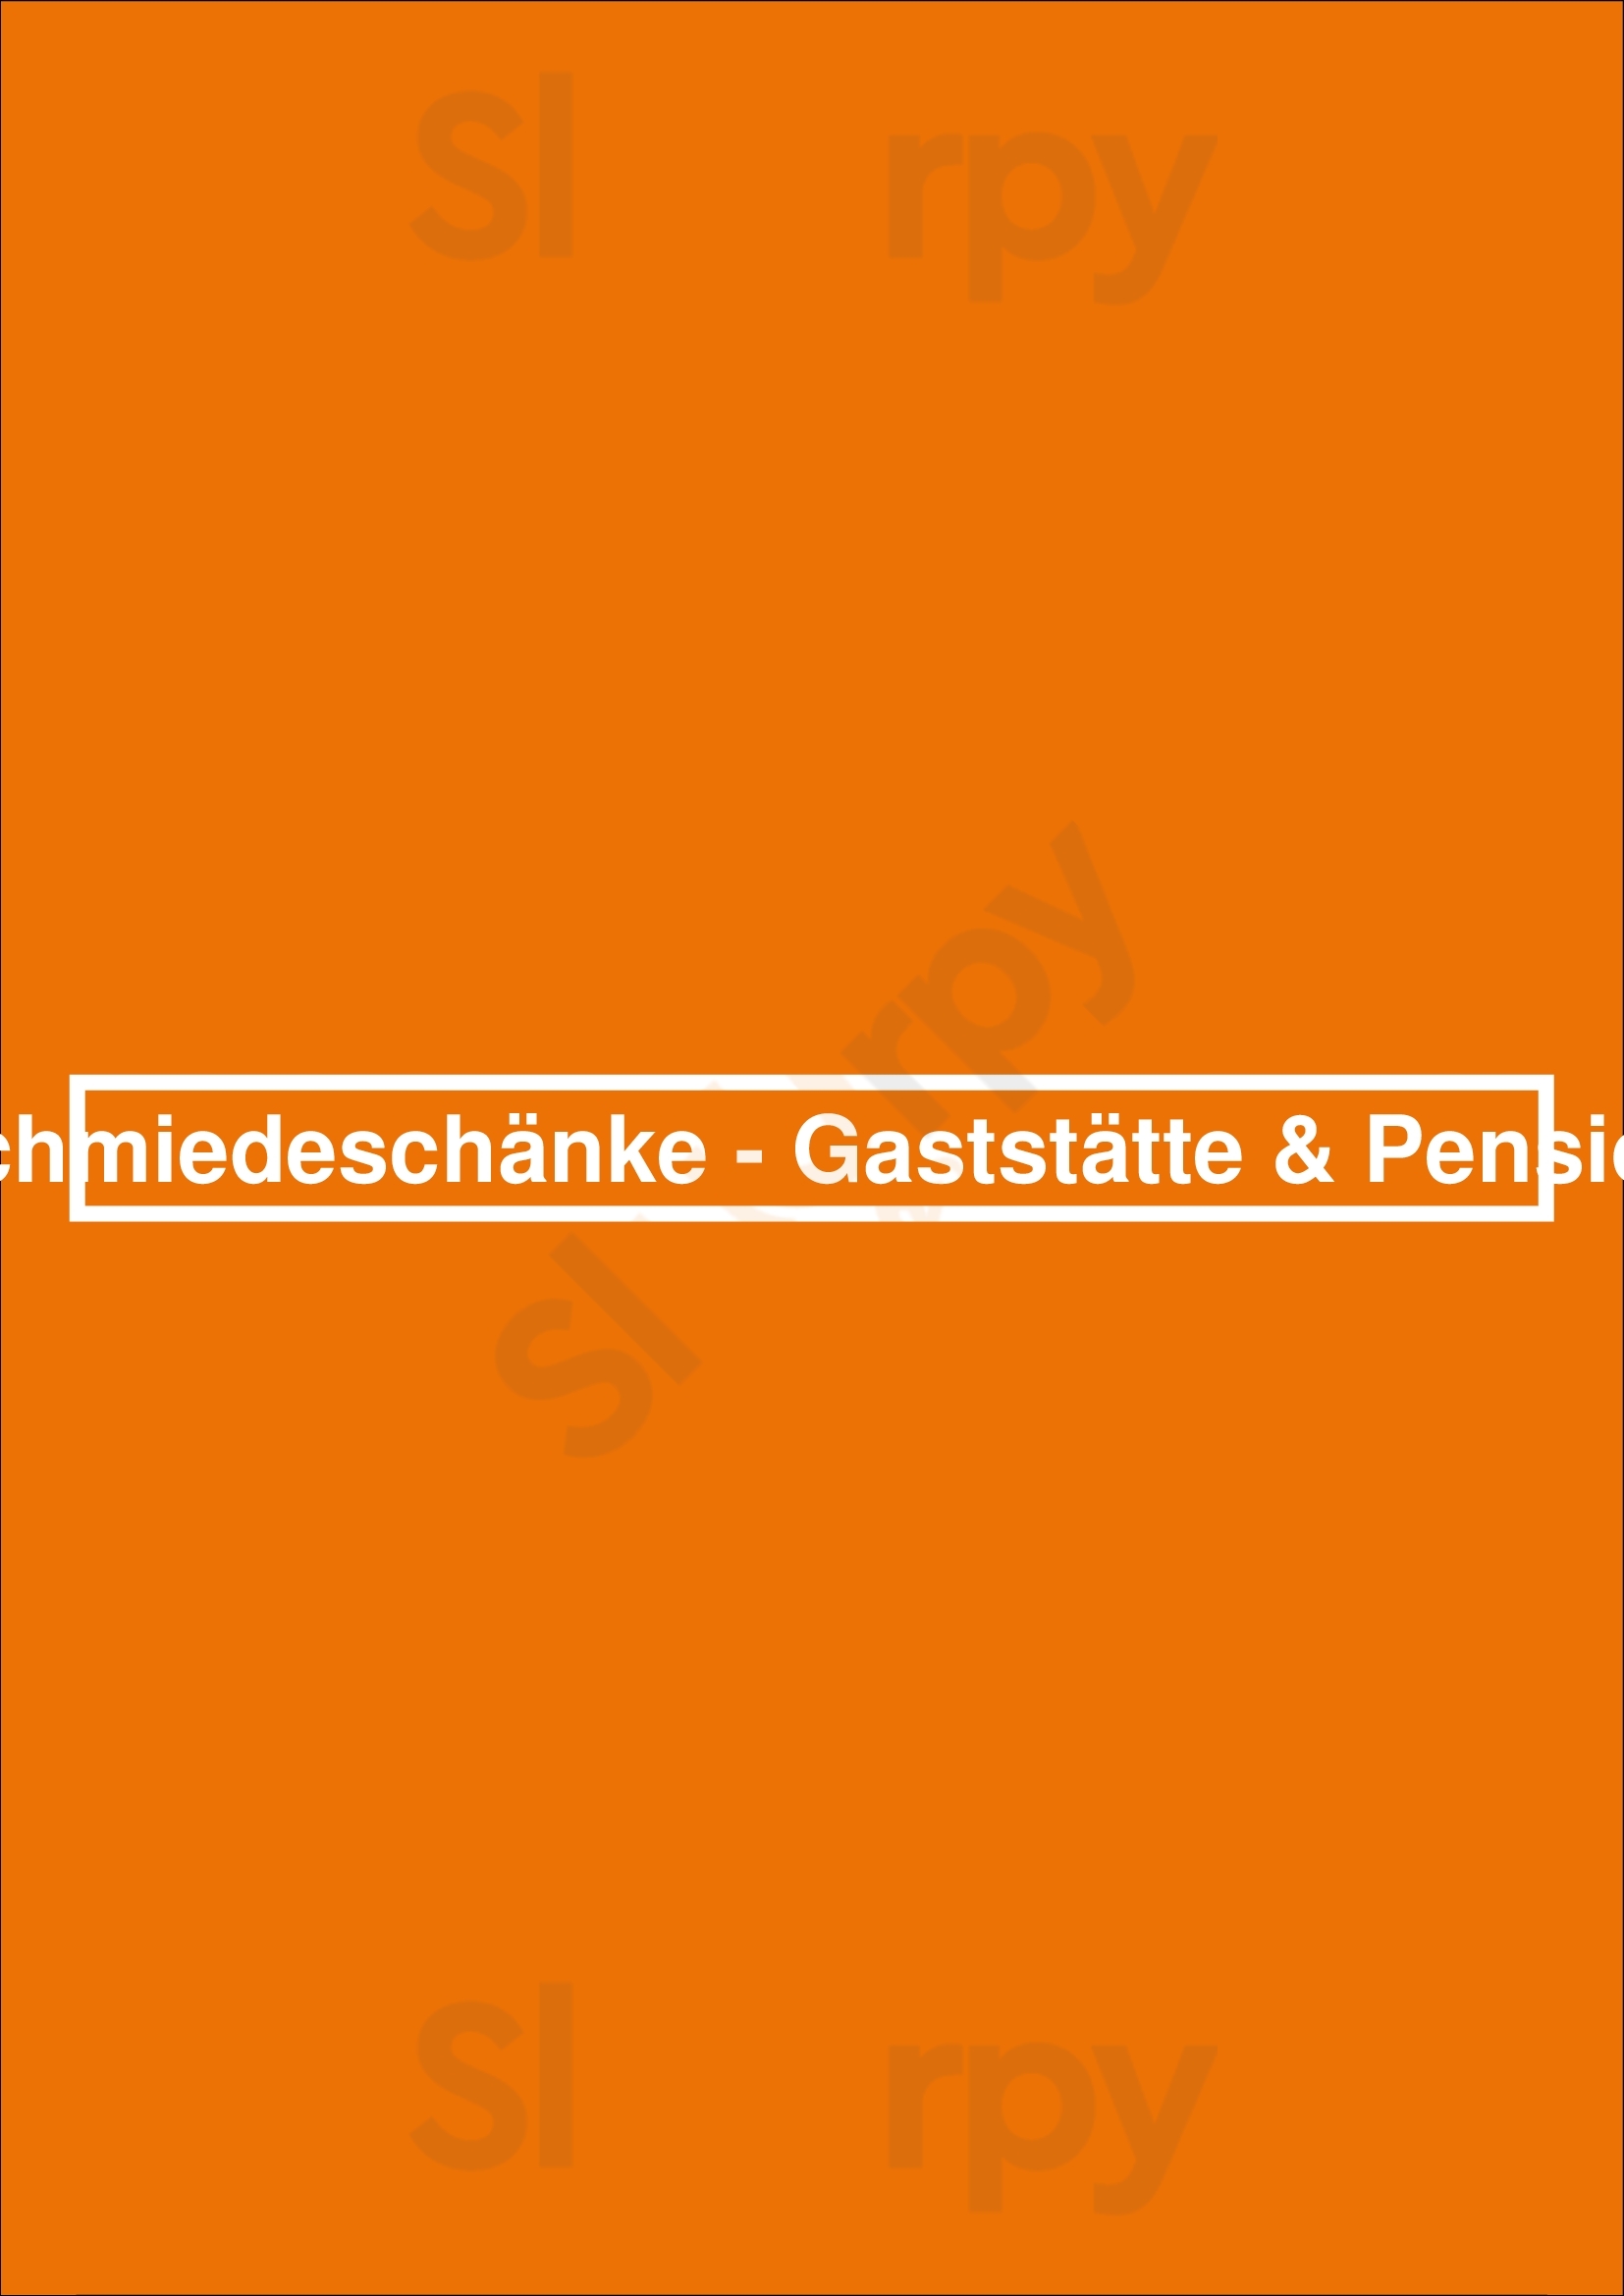 Schmiedeschänke - Gaststätte & Pension Dresden Menu - 1